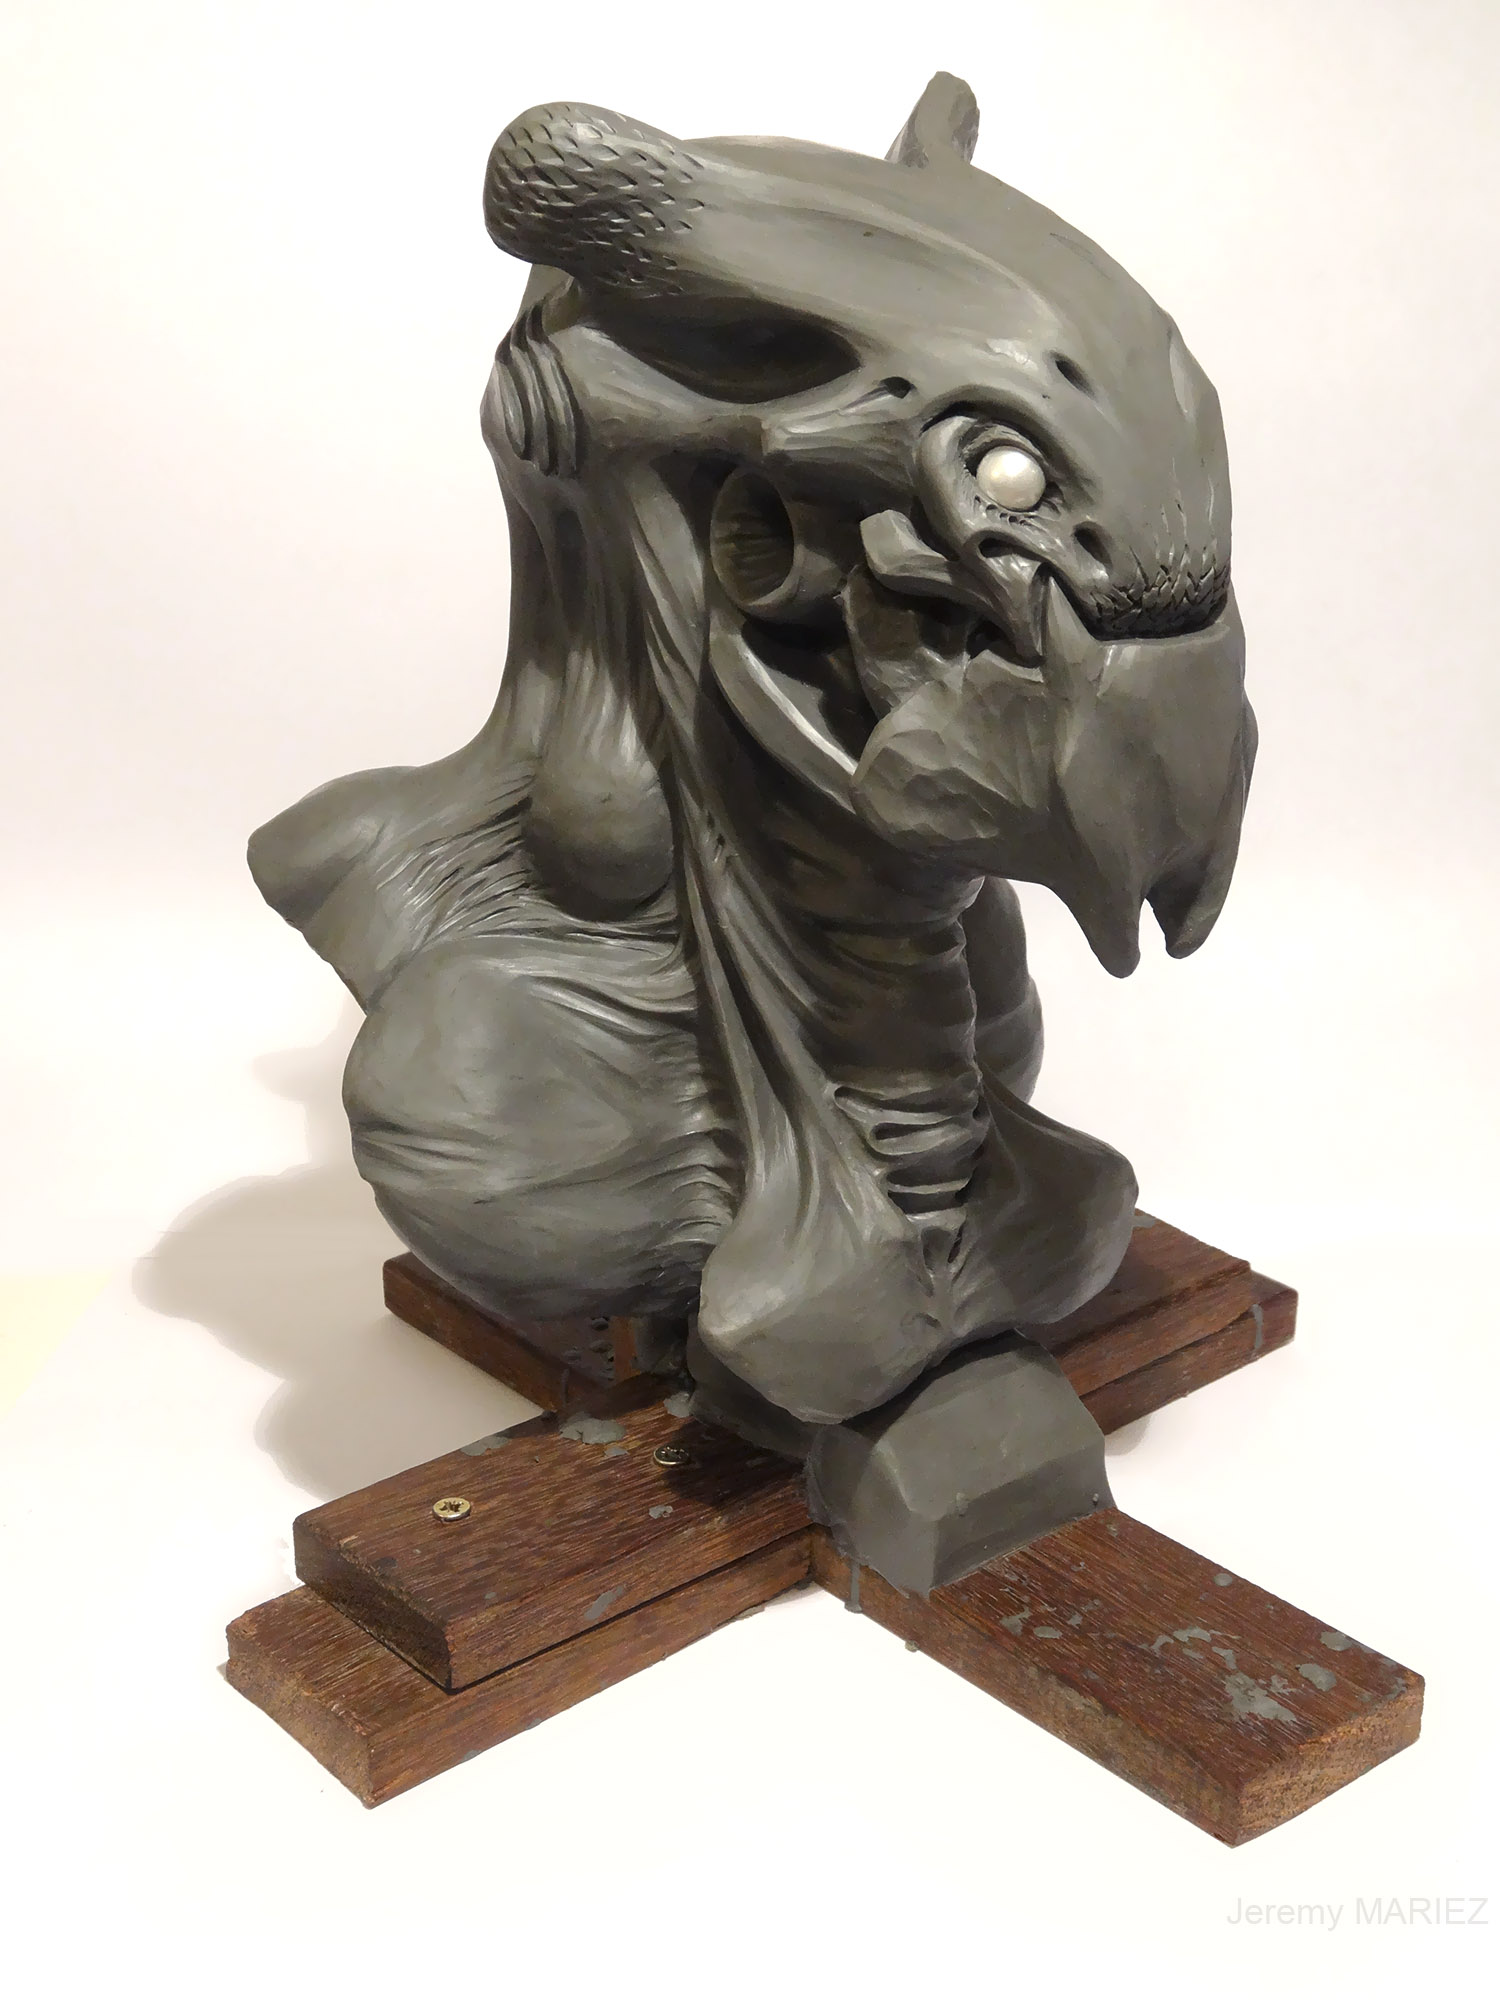 Sculpture-tete-alien-02 by choptider on DeviantArt